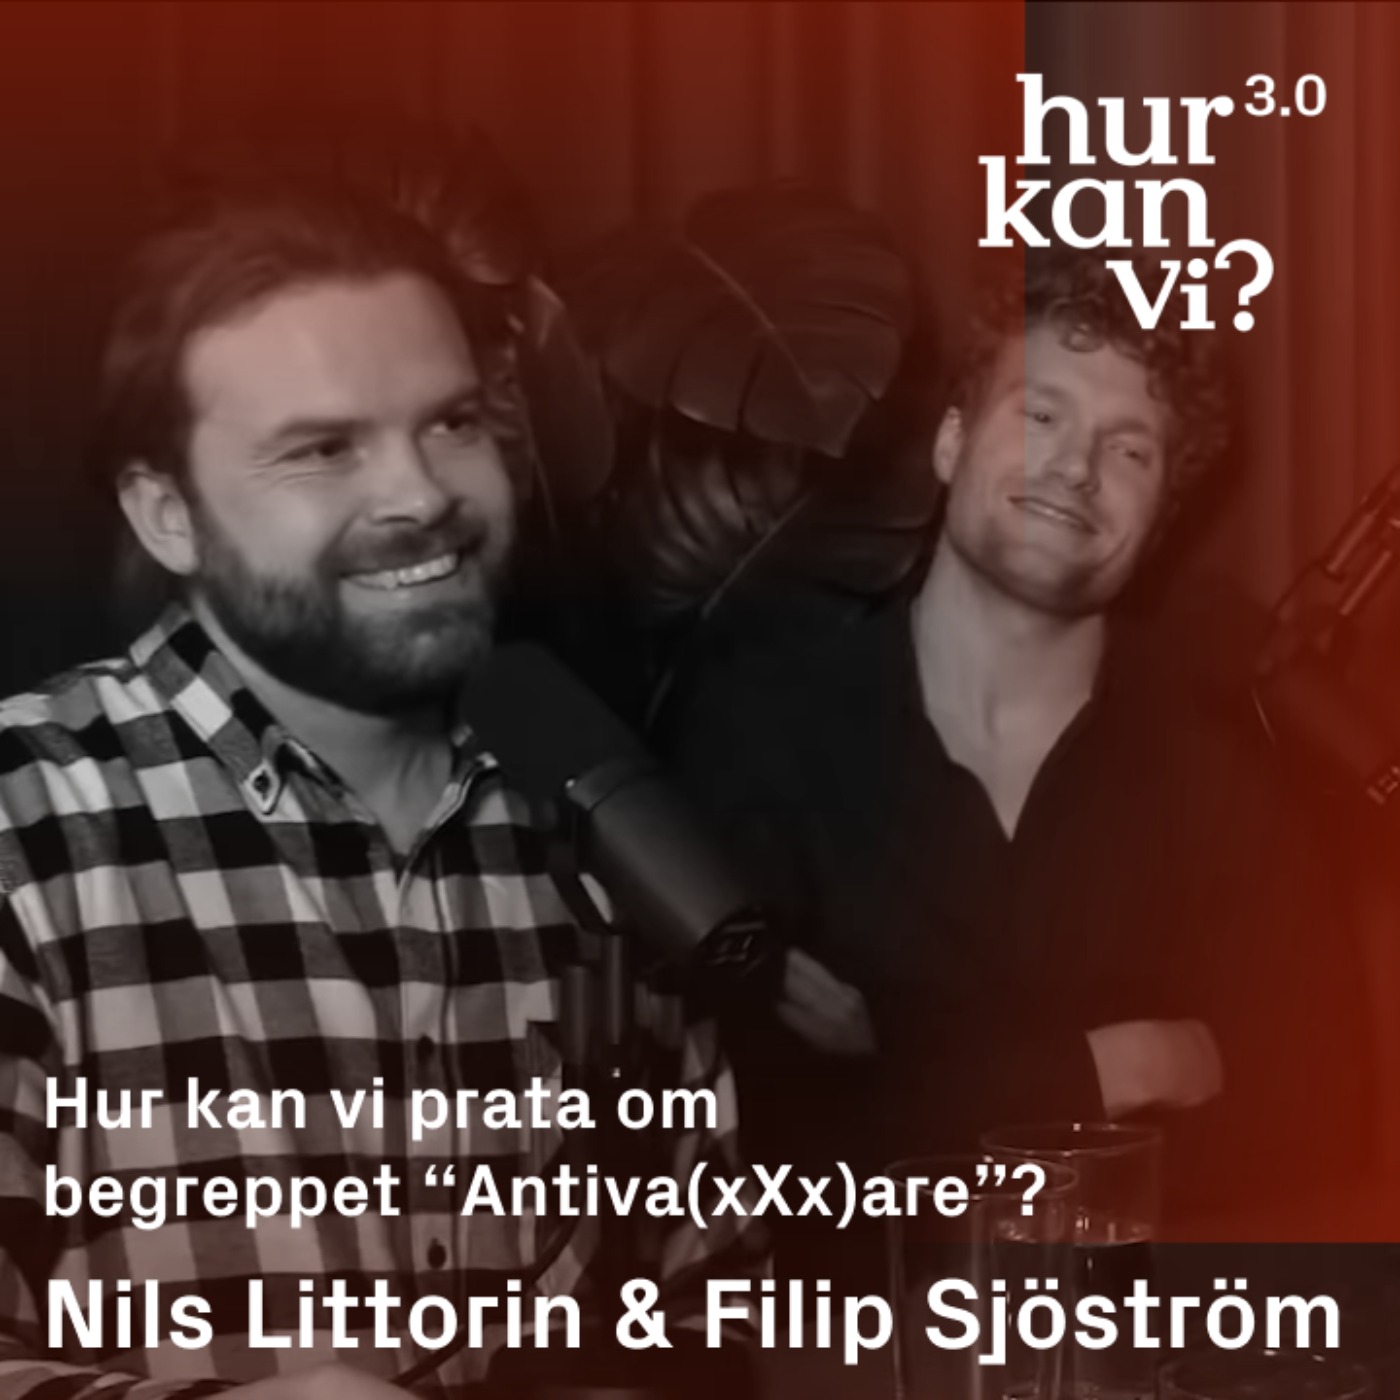 Nils Littorin & Filip Sjöström - DEL 1 - Hur kan vi prata om begreppet “Antiva(xXx)are”?